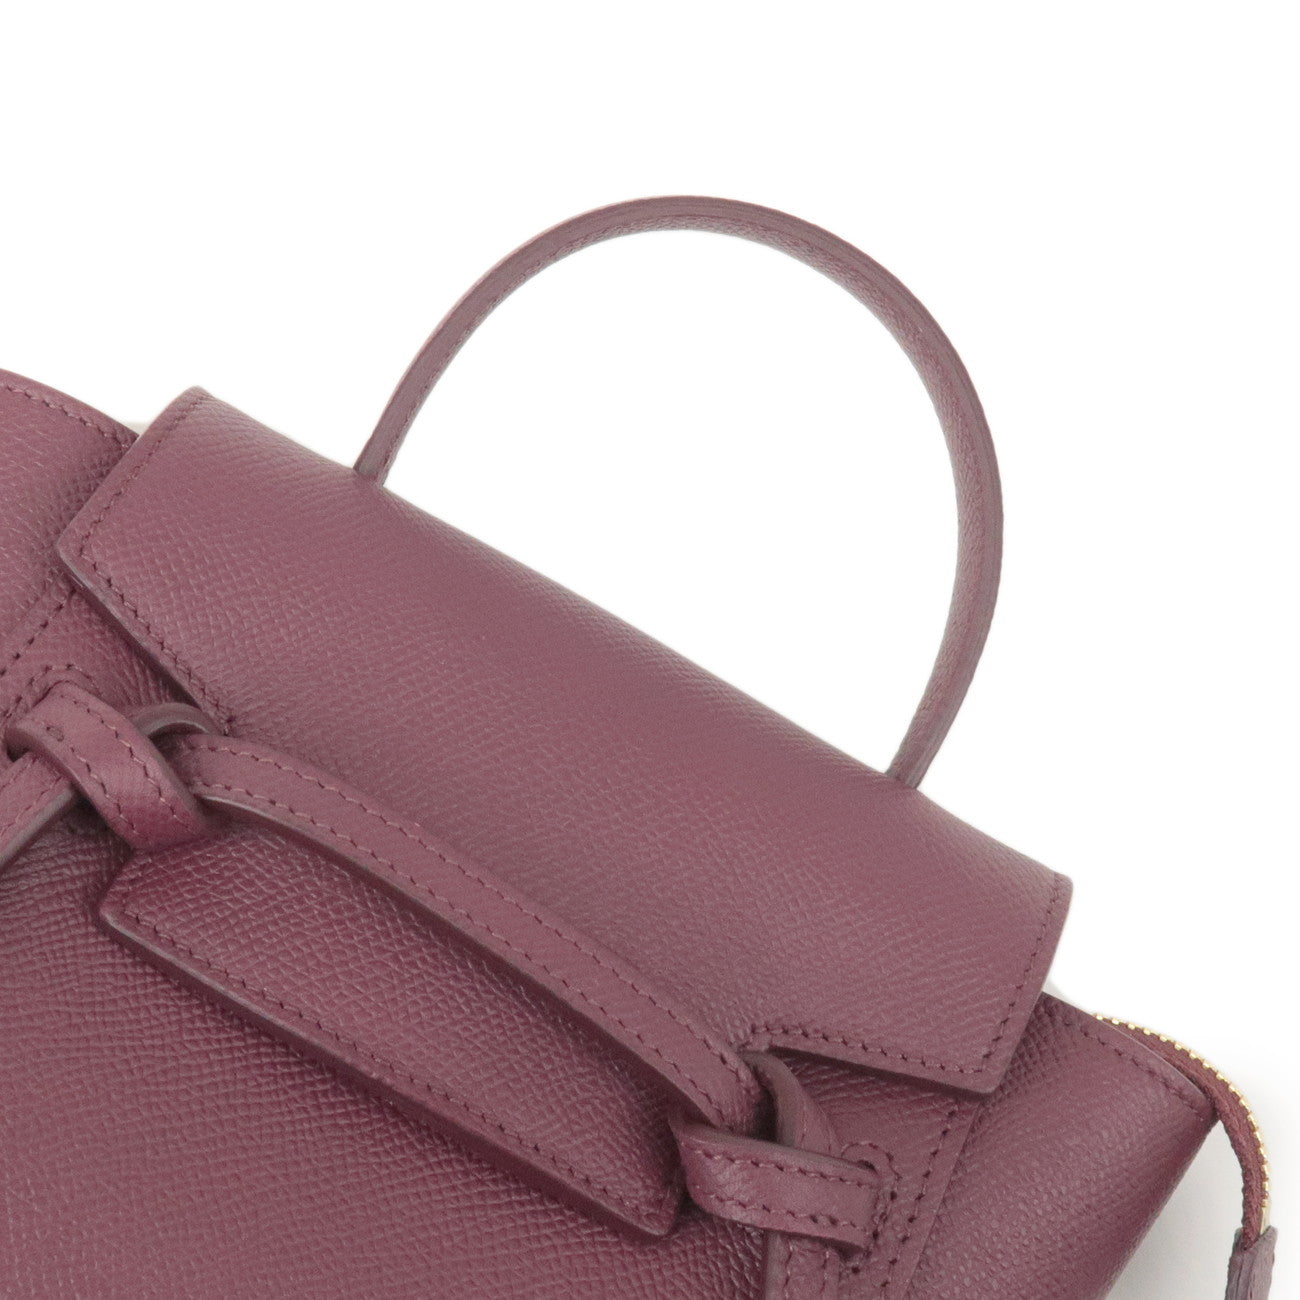 CELINE Leather Pico Belt Bag 2Way Shoulder Bag Bordeaux 194263